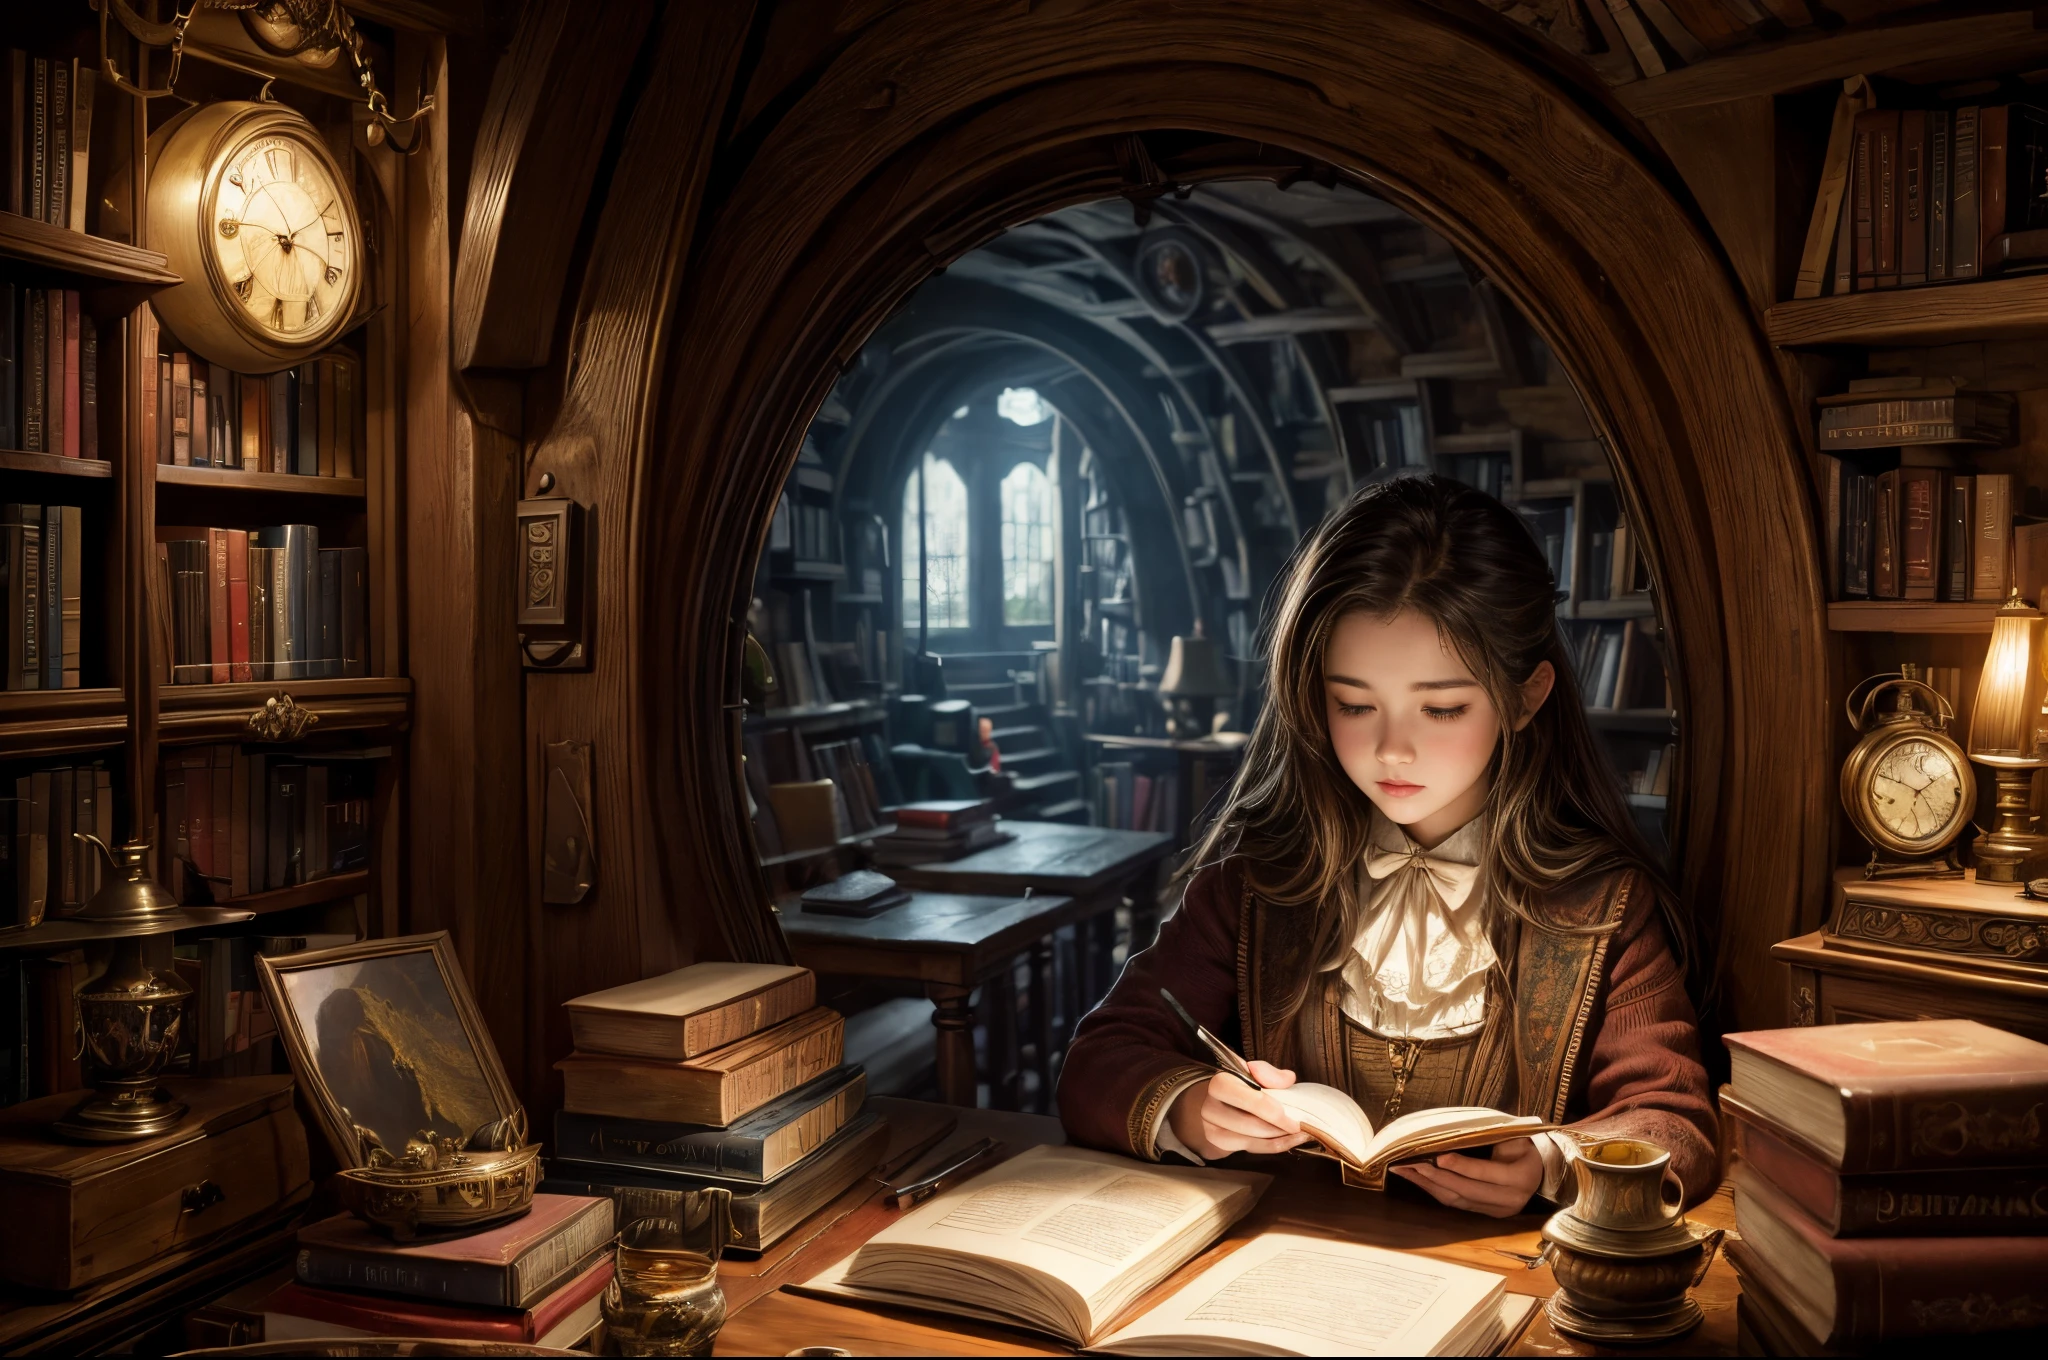 "pintura fotorrealista, ((cautivador)) escena de una niña absorta en la lectura, Libros antiguos, acogedora cueva hobbit, reloj intrincado con engranajes en movimiento, ((nostálgico)), detallado, paleta cálida"